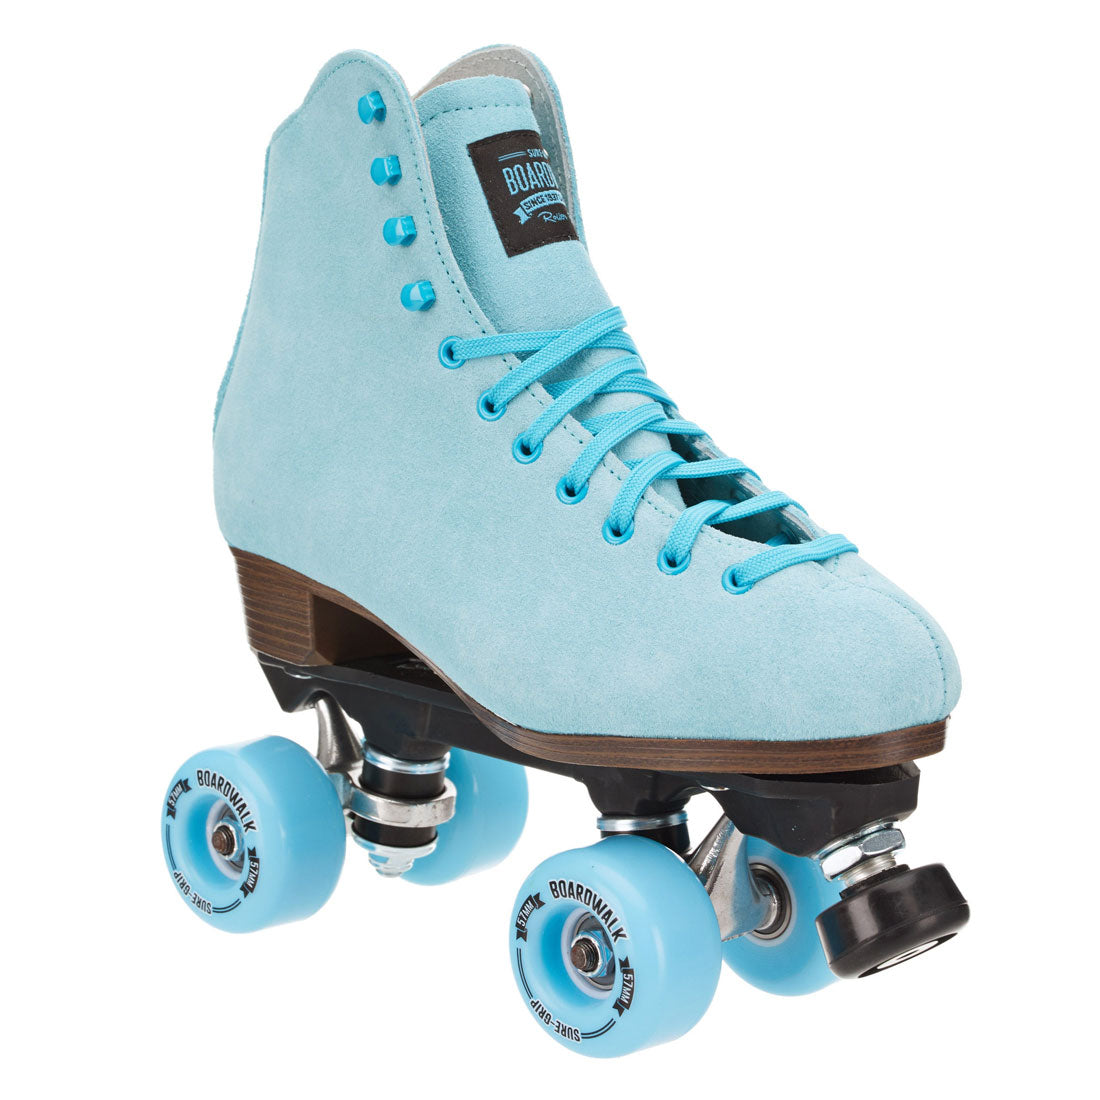 Sure-Grip Boardwalk Skate - Sea Breeze Blue Roller Skates